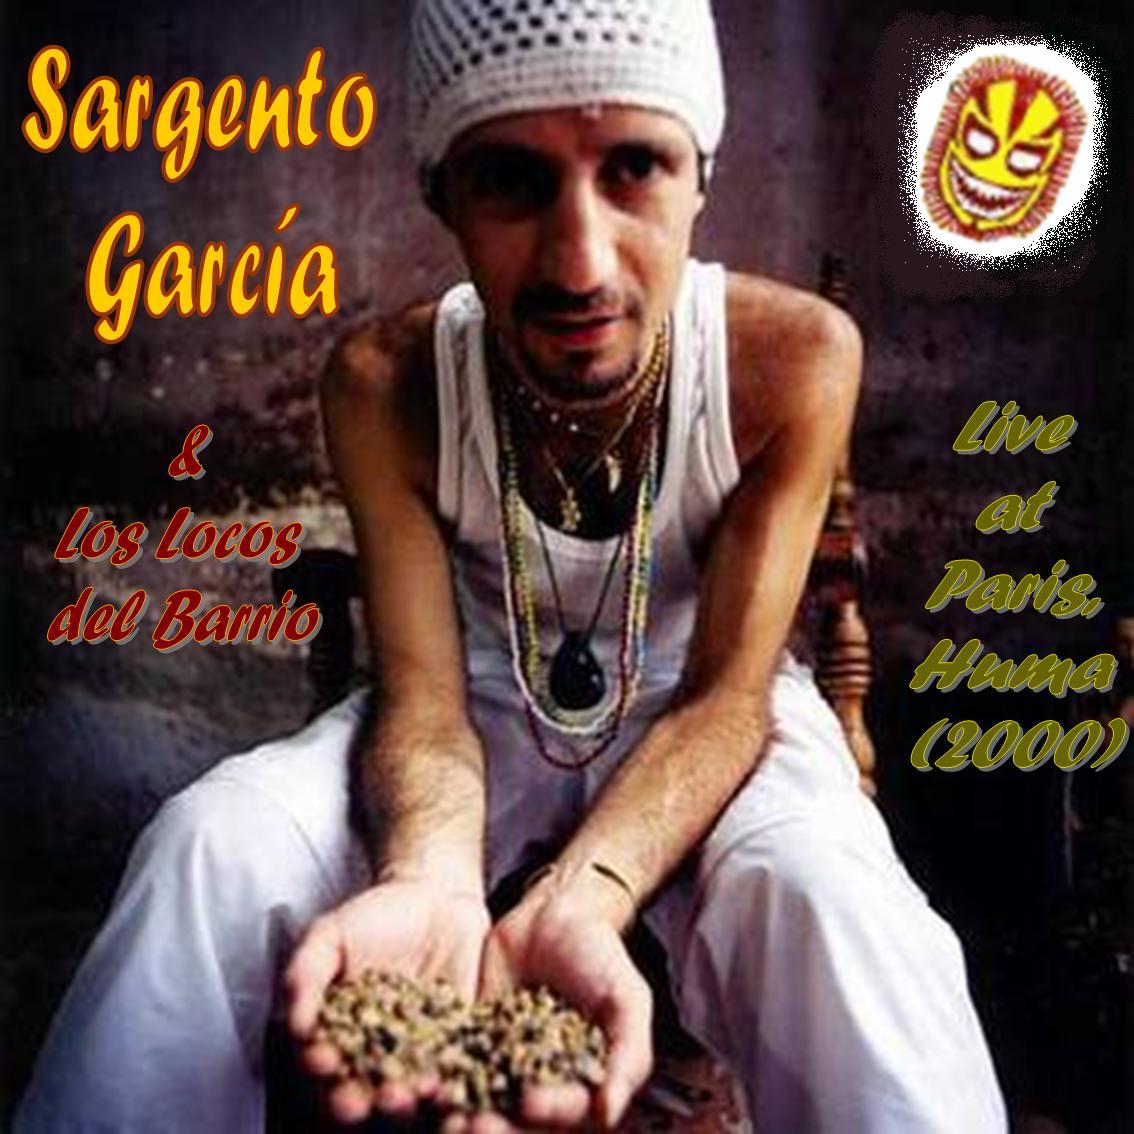 [Sargento+GarcÃ­a+&+Los+Locos+del+Barrio+-+Live+at+Paris,+Huma+(2000).jpg]